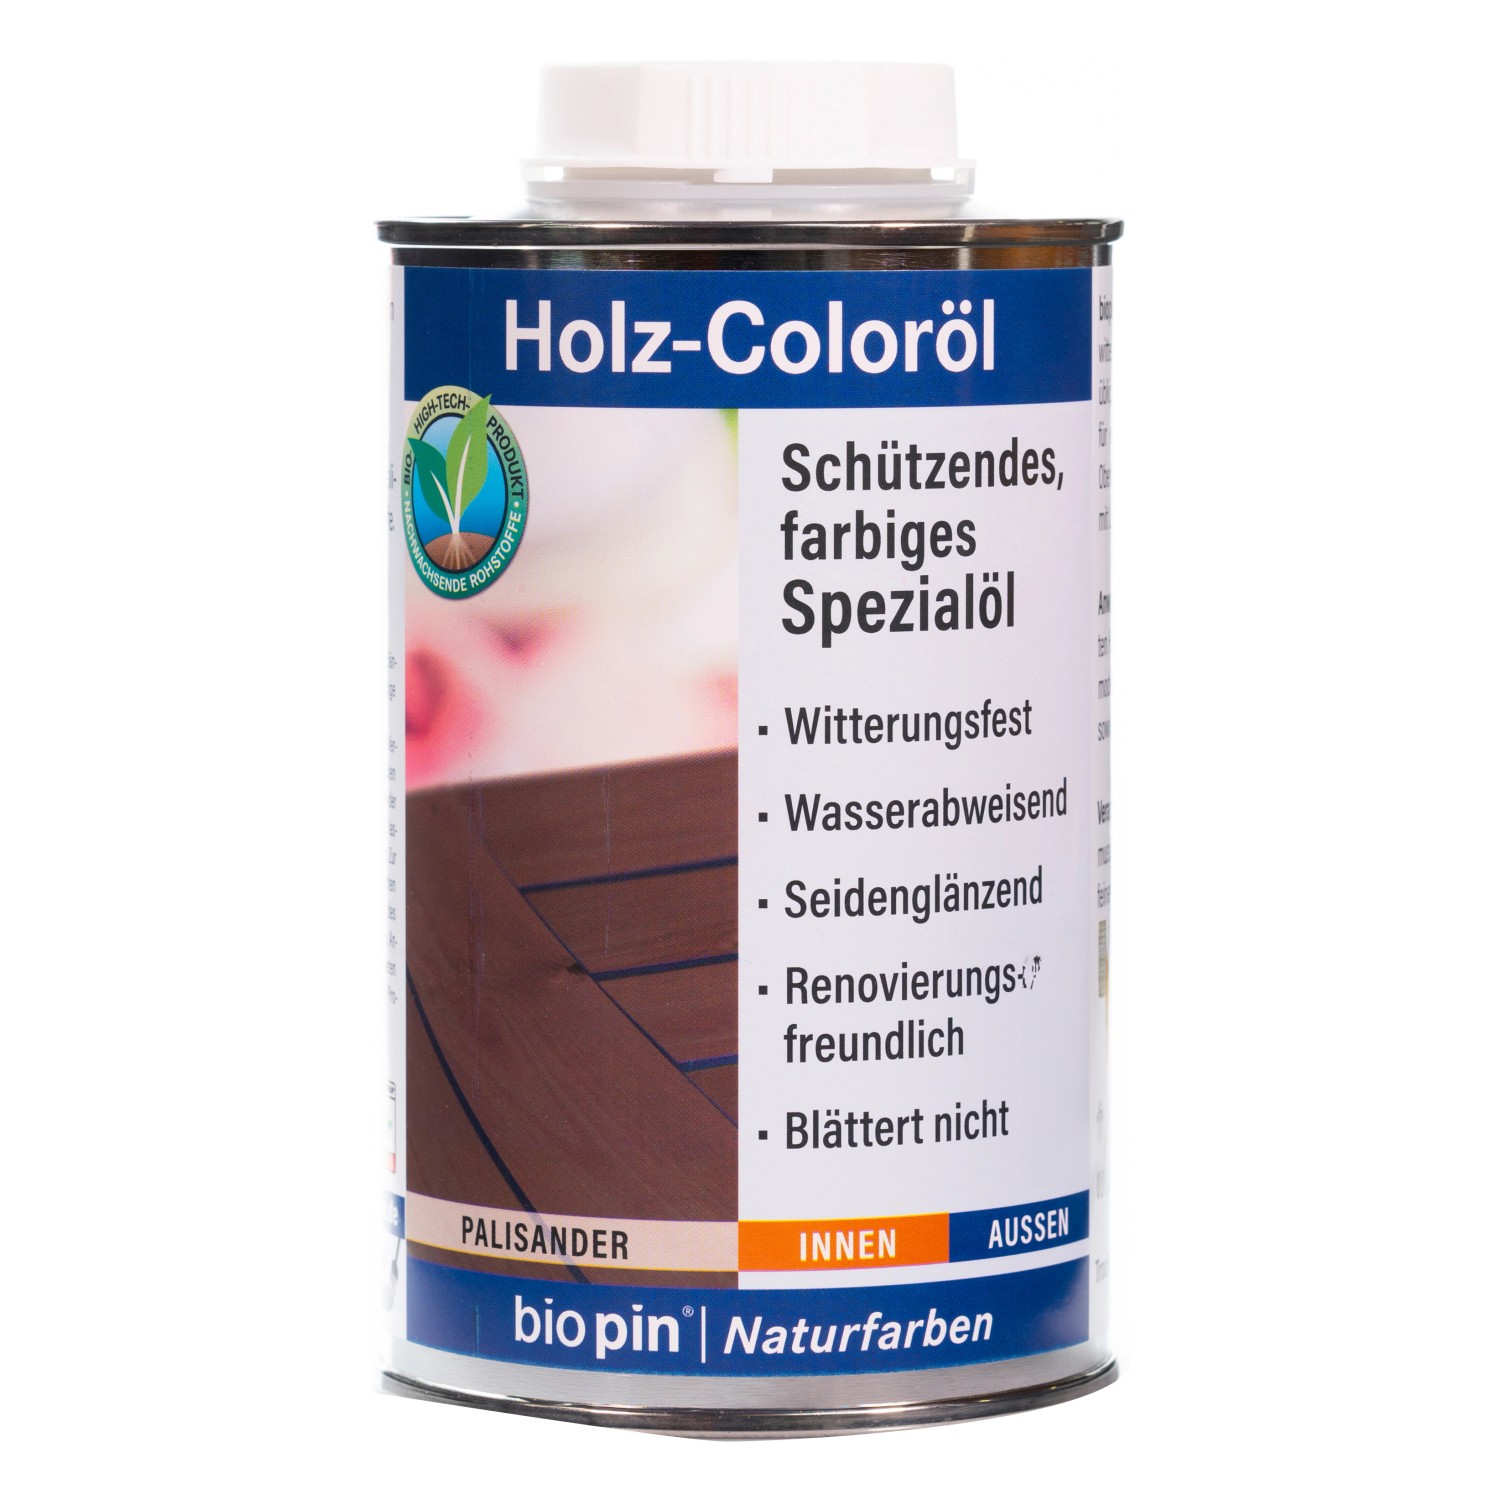 biopin Holz- Coloröl palisander